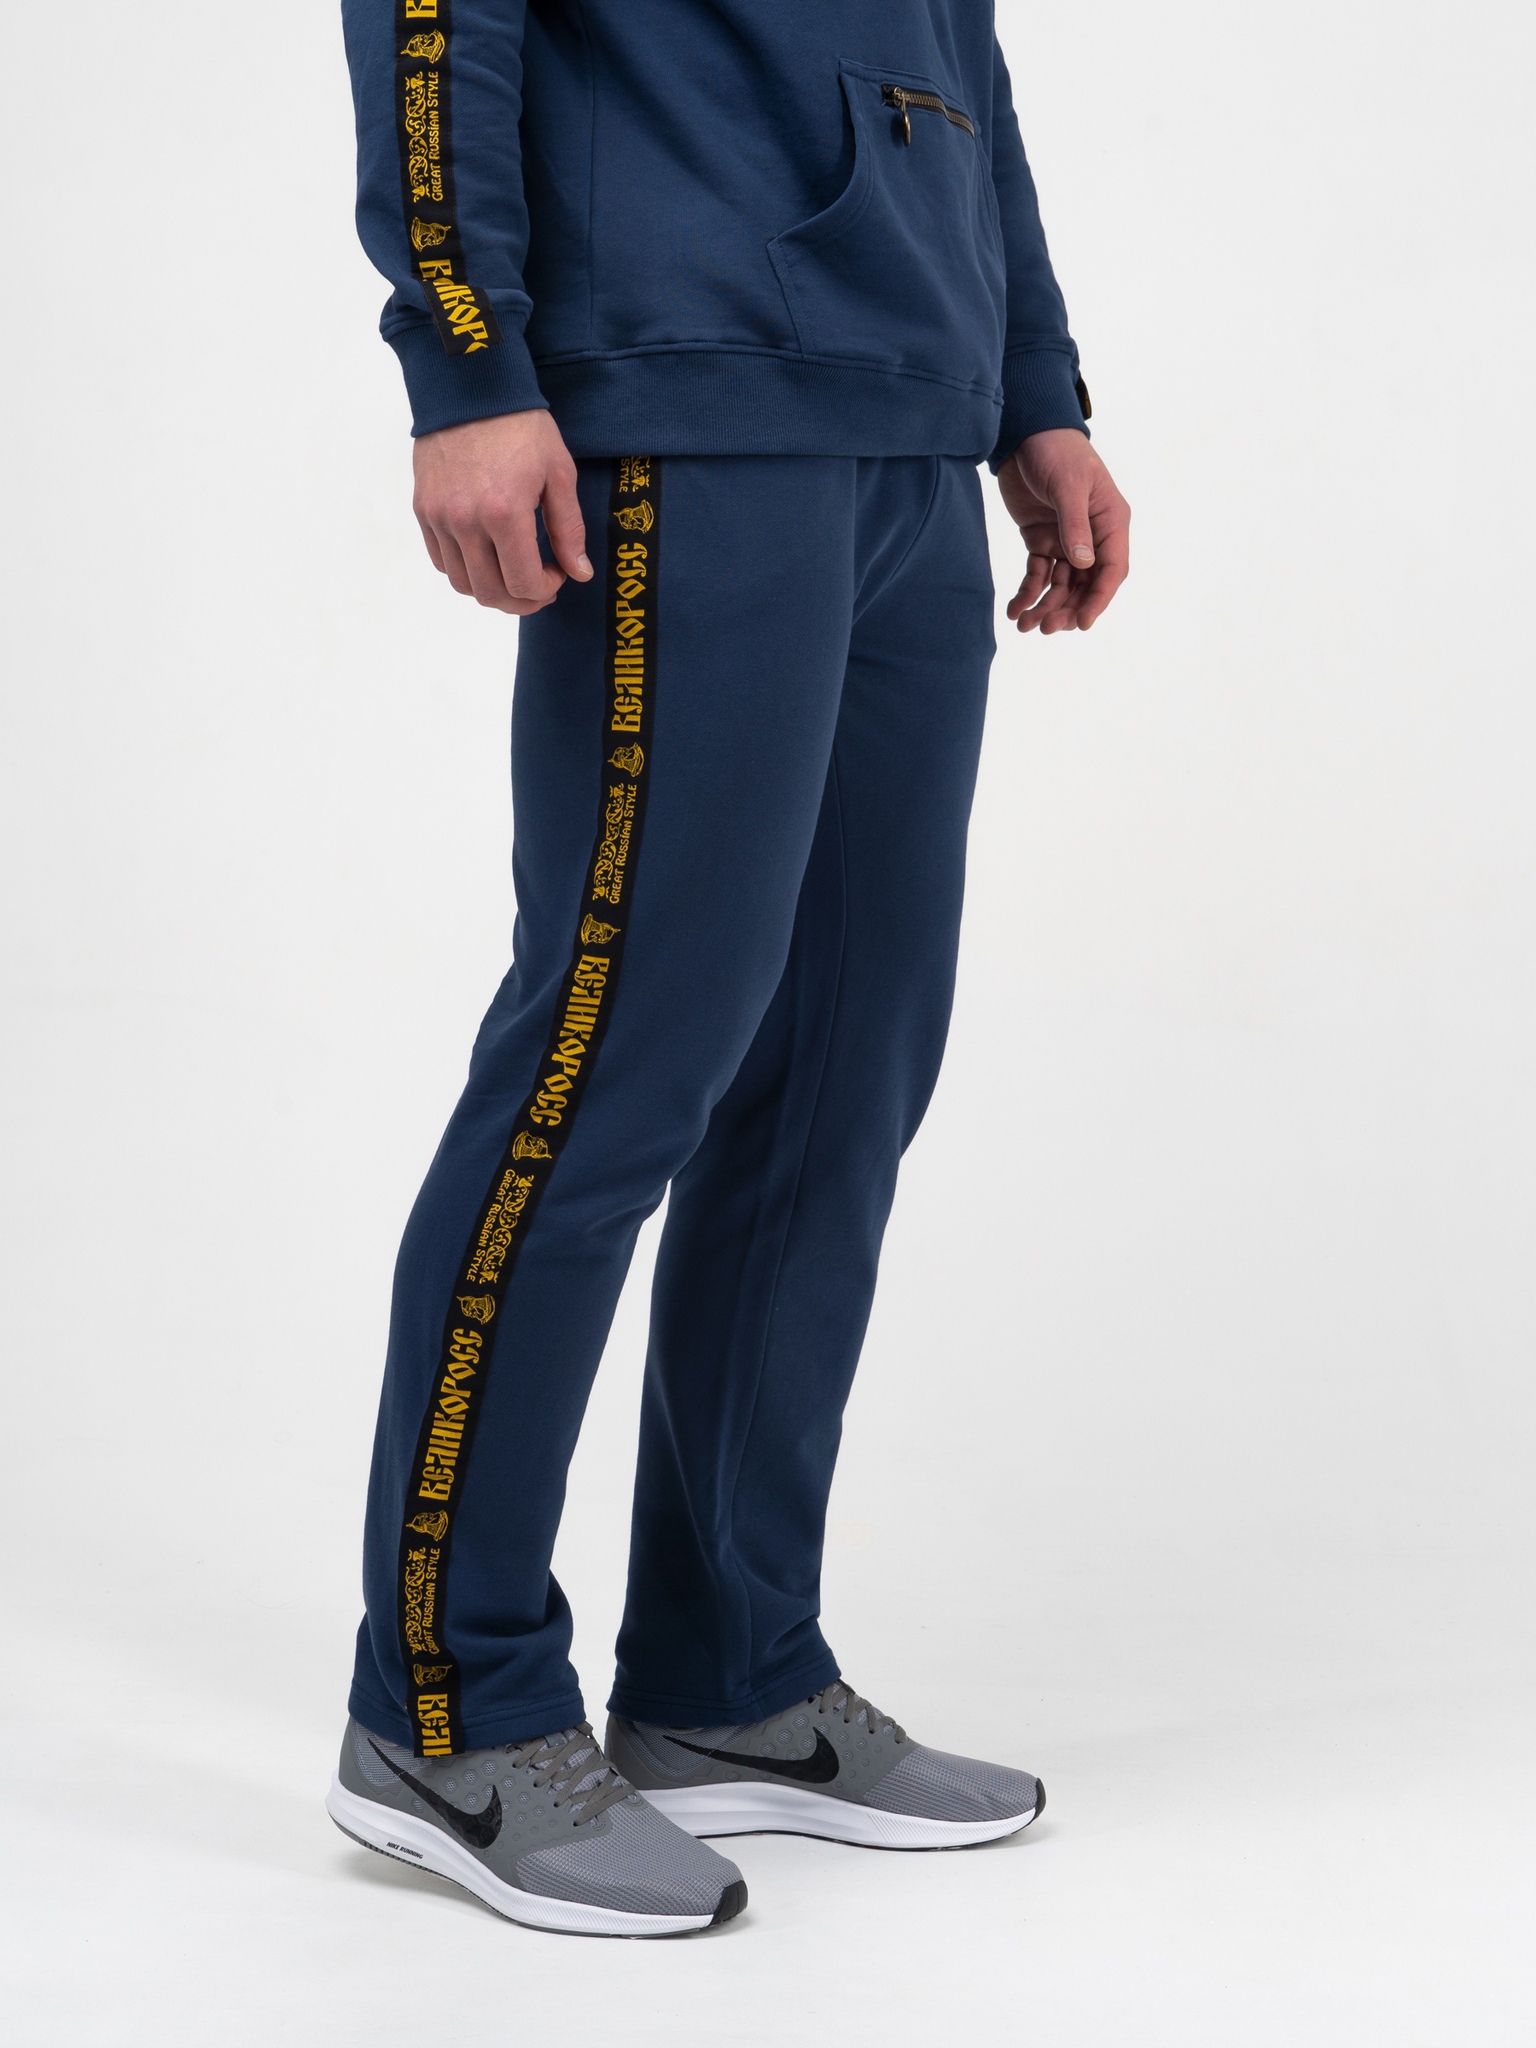 фото Спортивные брюки мужские великоросс чемпион синие 60 ru